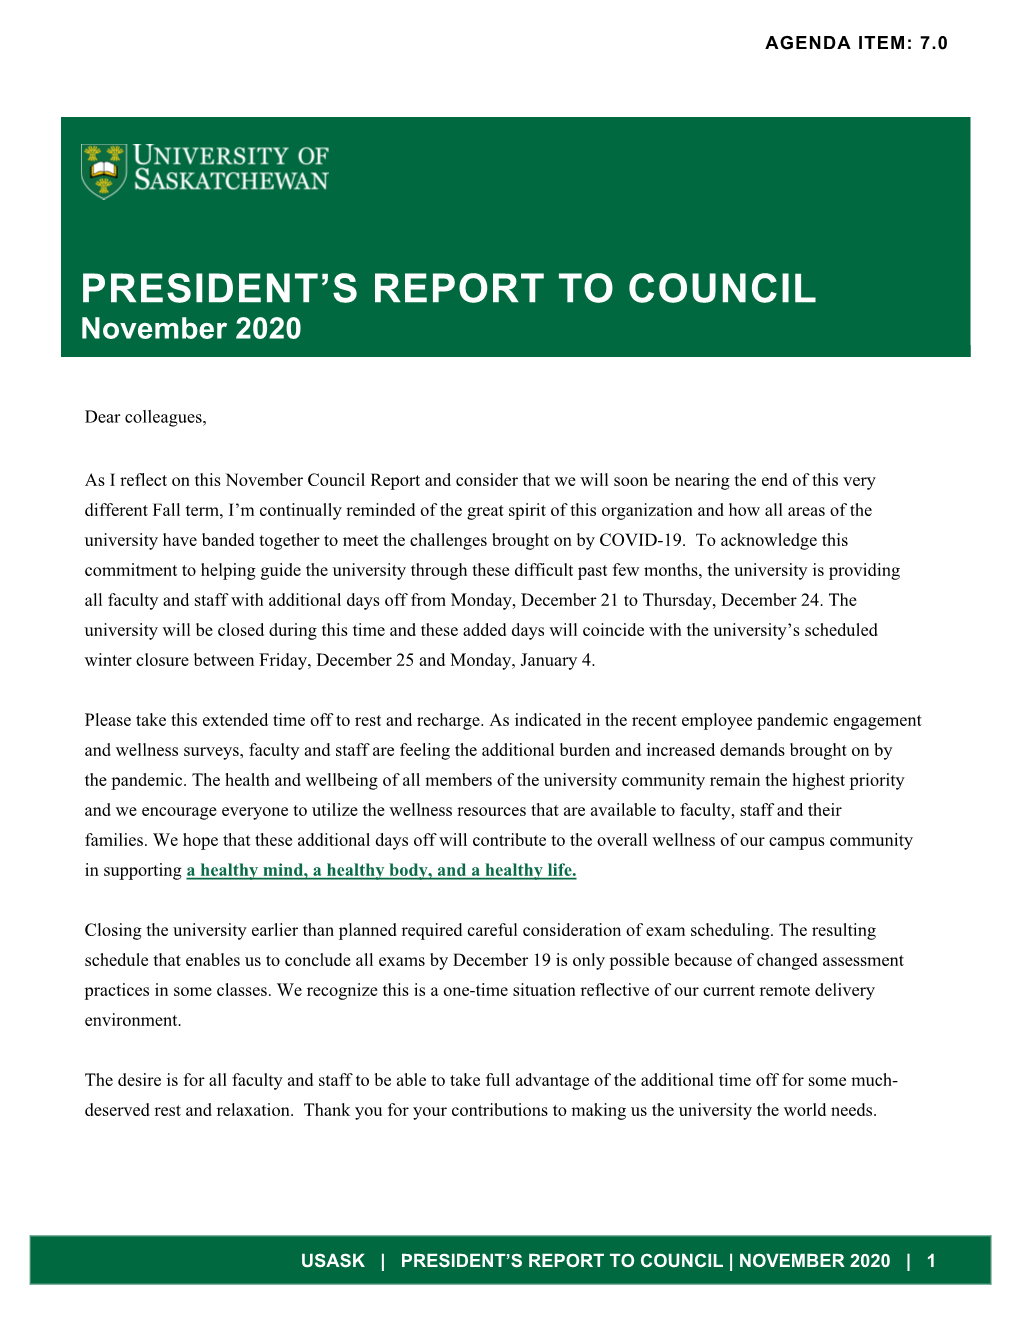 Draft Council Report Nov 2020